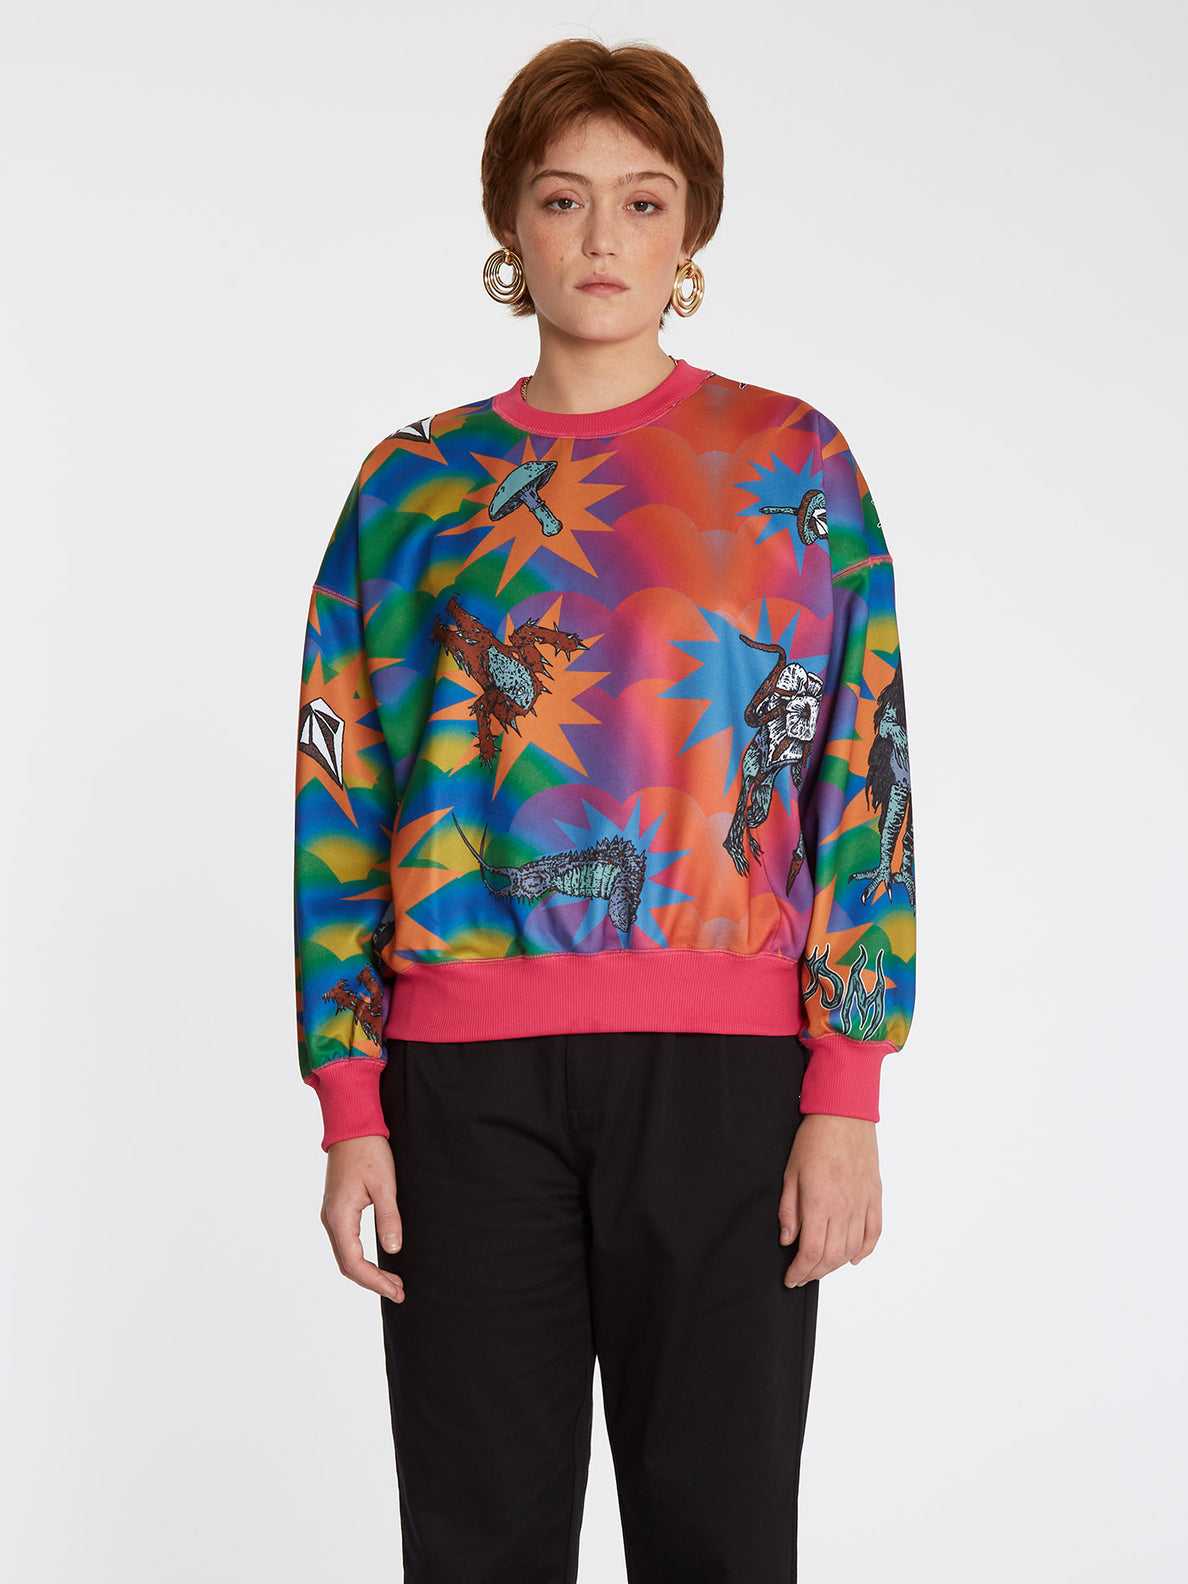 Chrissie Abbott X French Sweatshirt - MULTI – Volcom Europe